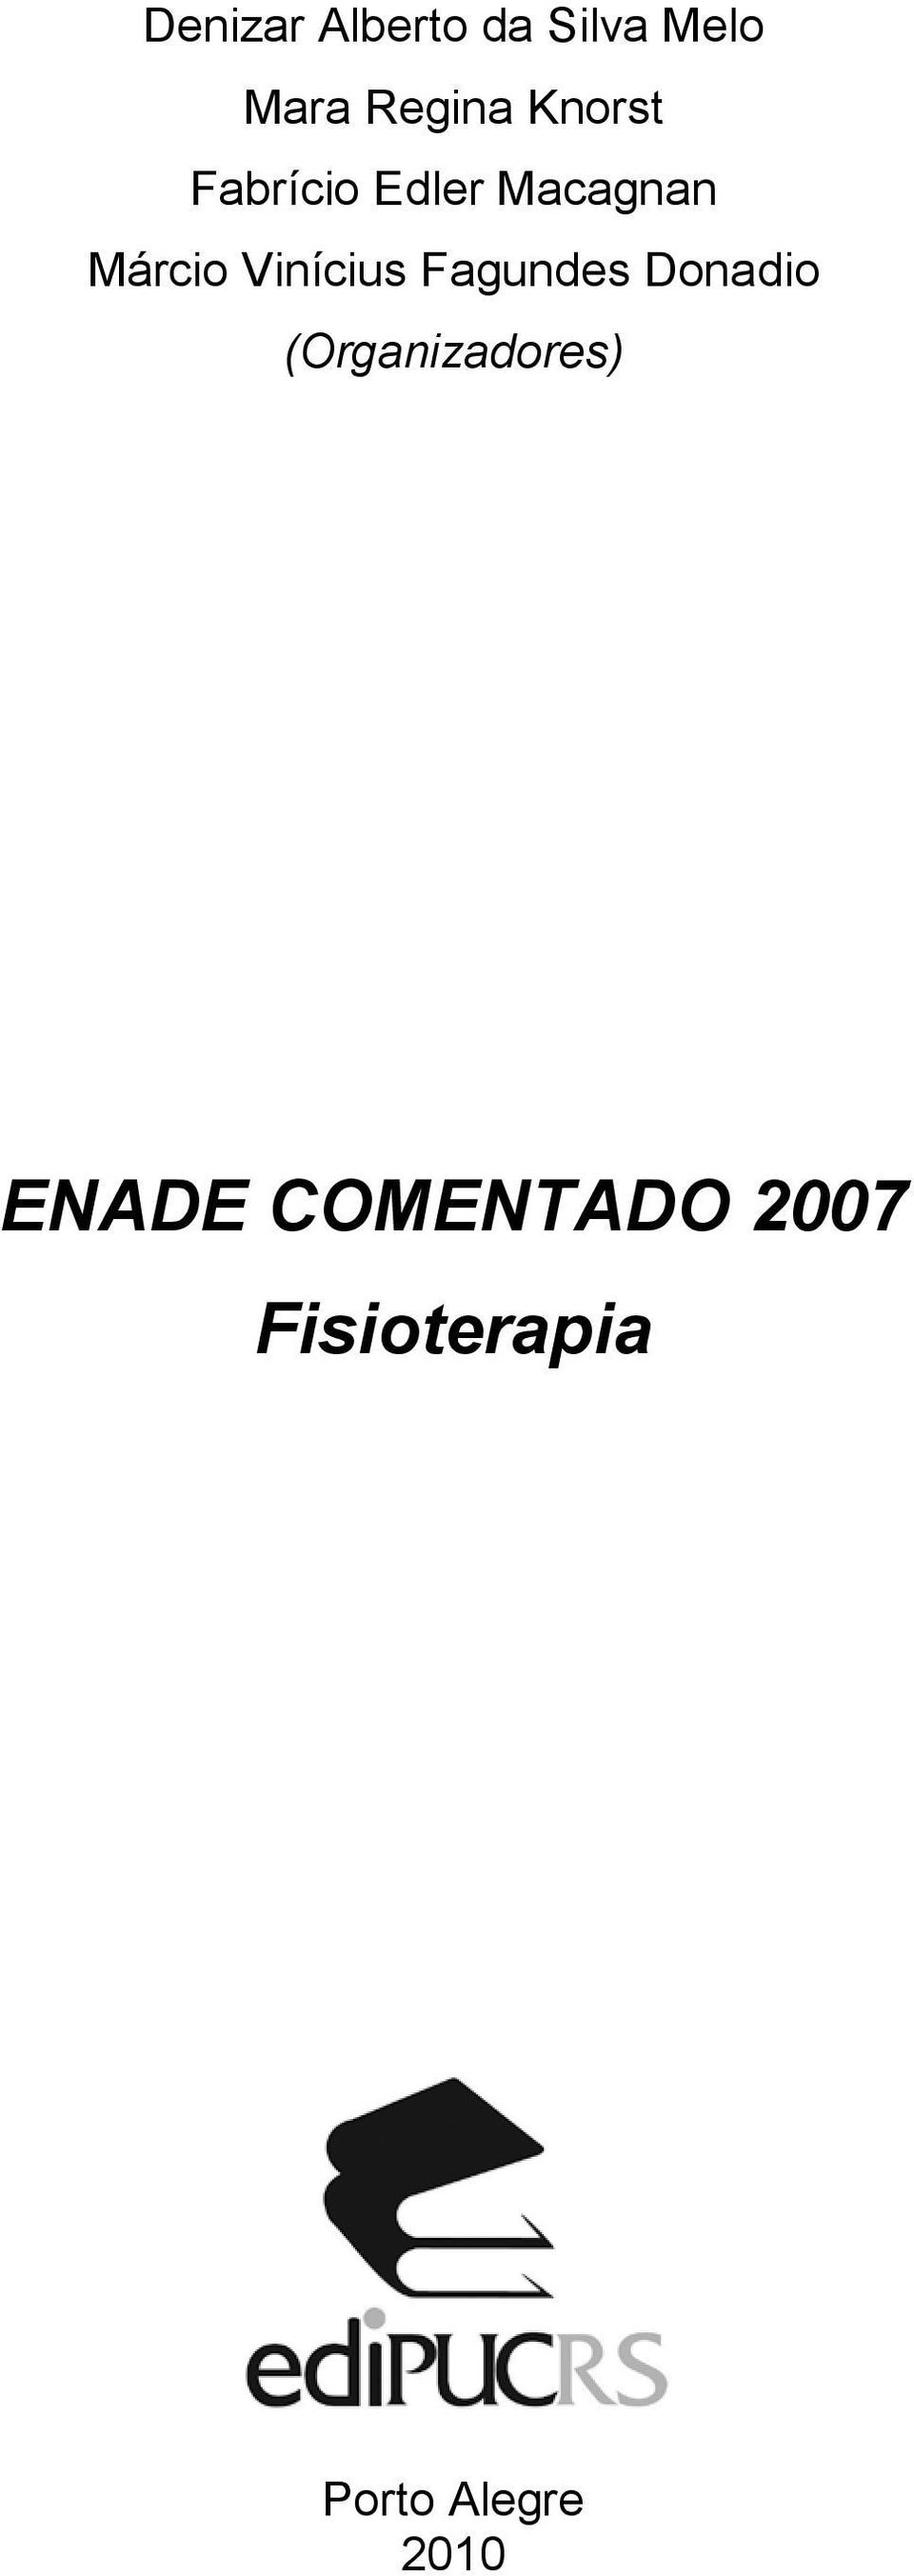 Vinícius Fagundes Donadio (Organizadores)